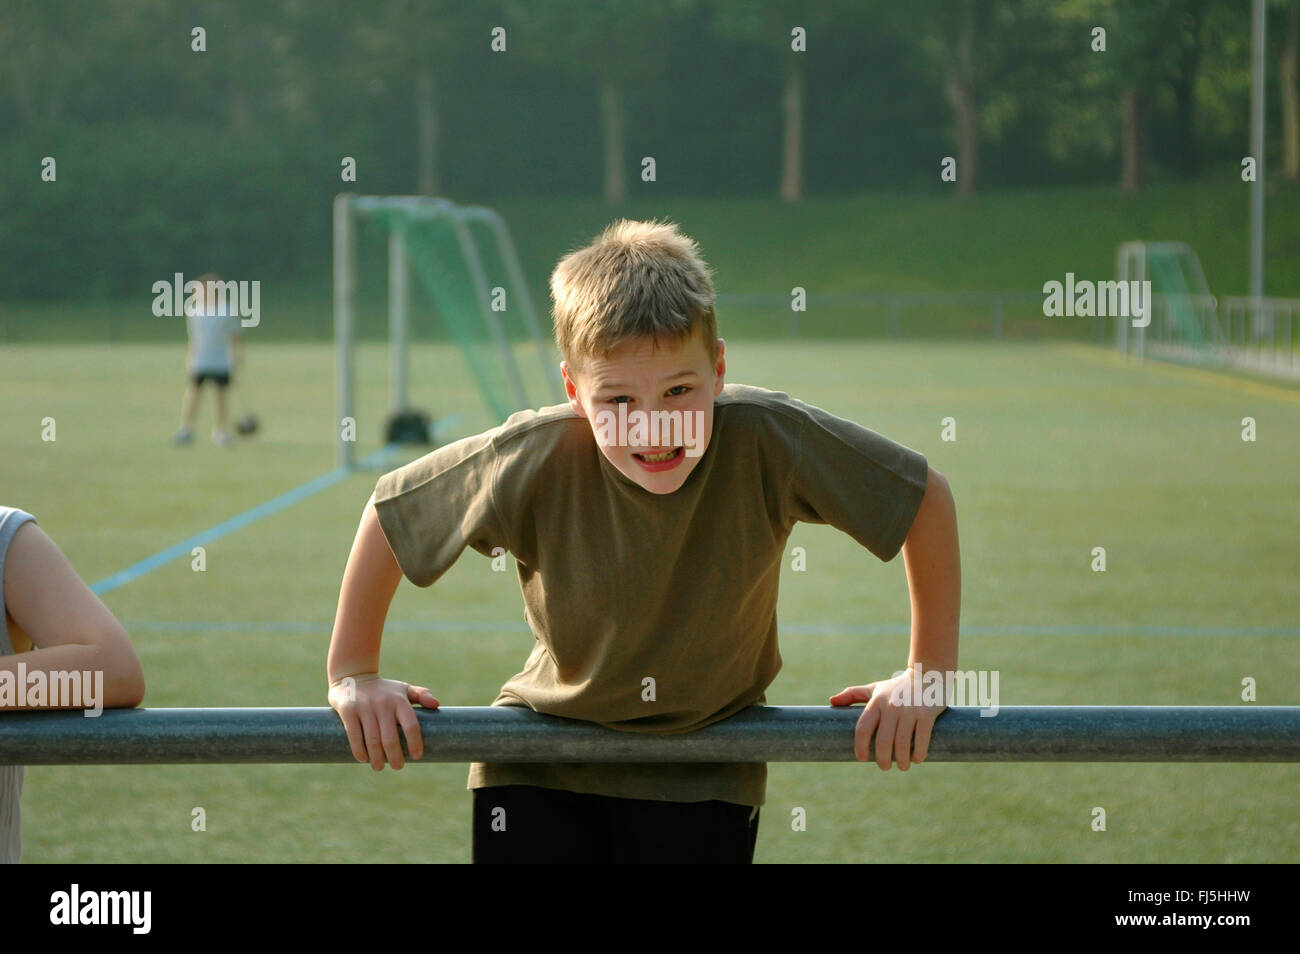 junge drücken sich über ein Geländer auf dem Fußballplatz, Porträt eines Kindes Stockfoto